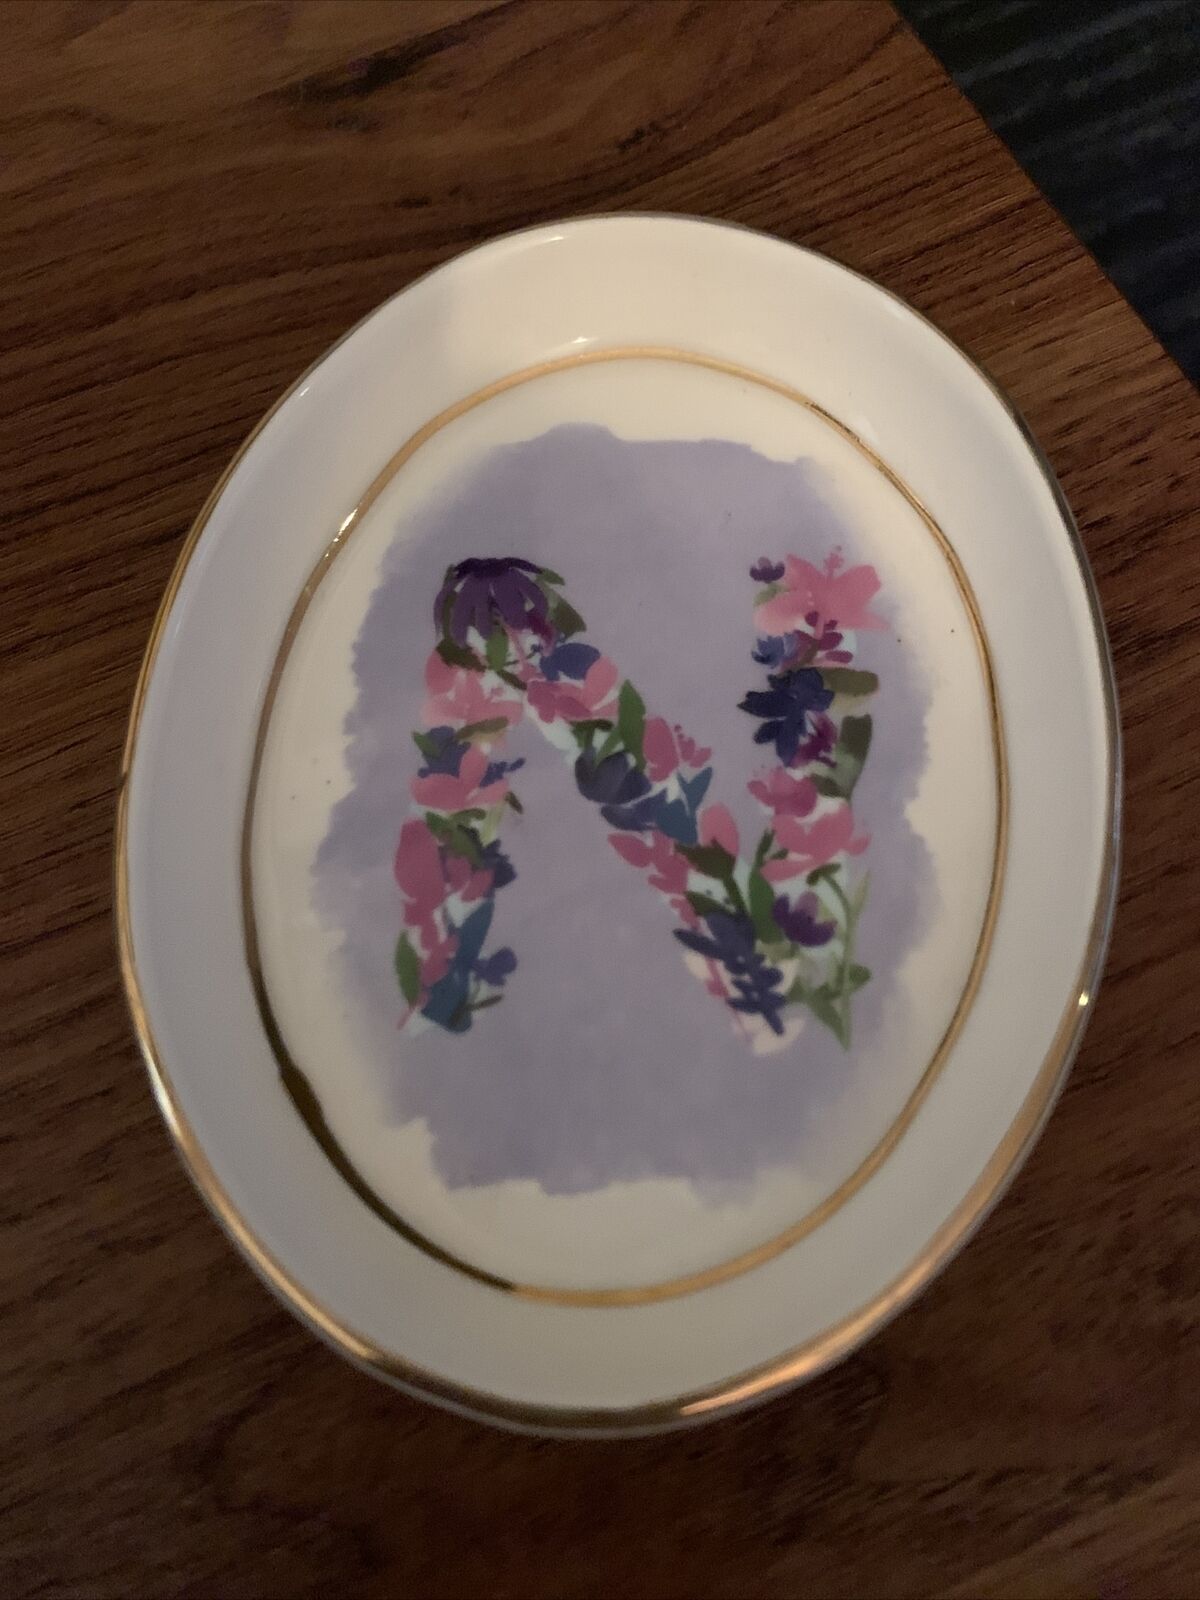 Anthropologie Kiana Mosley Trinket Dish Monogram ‘N’ Flowers